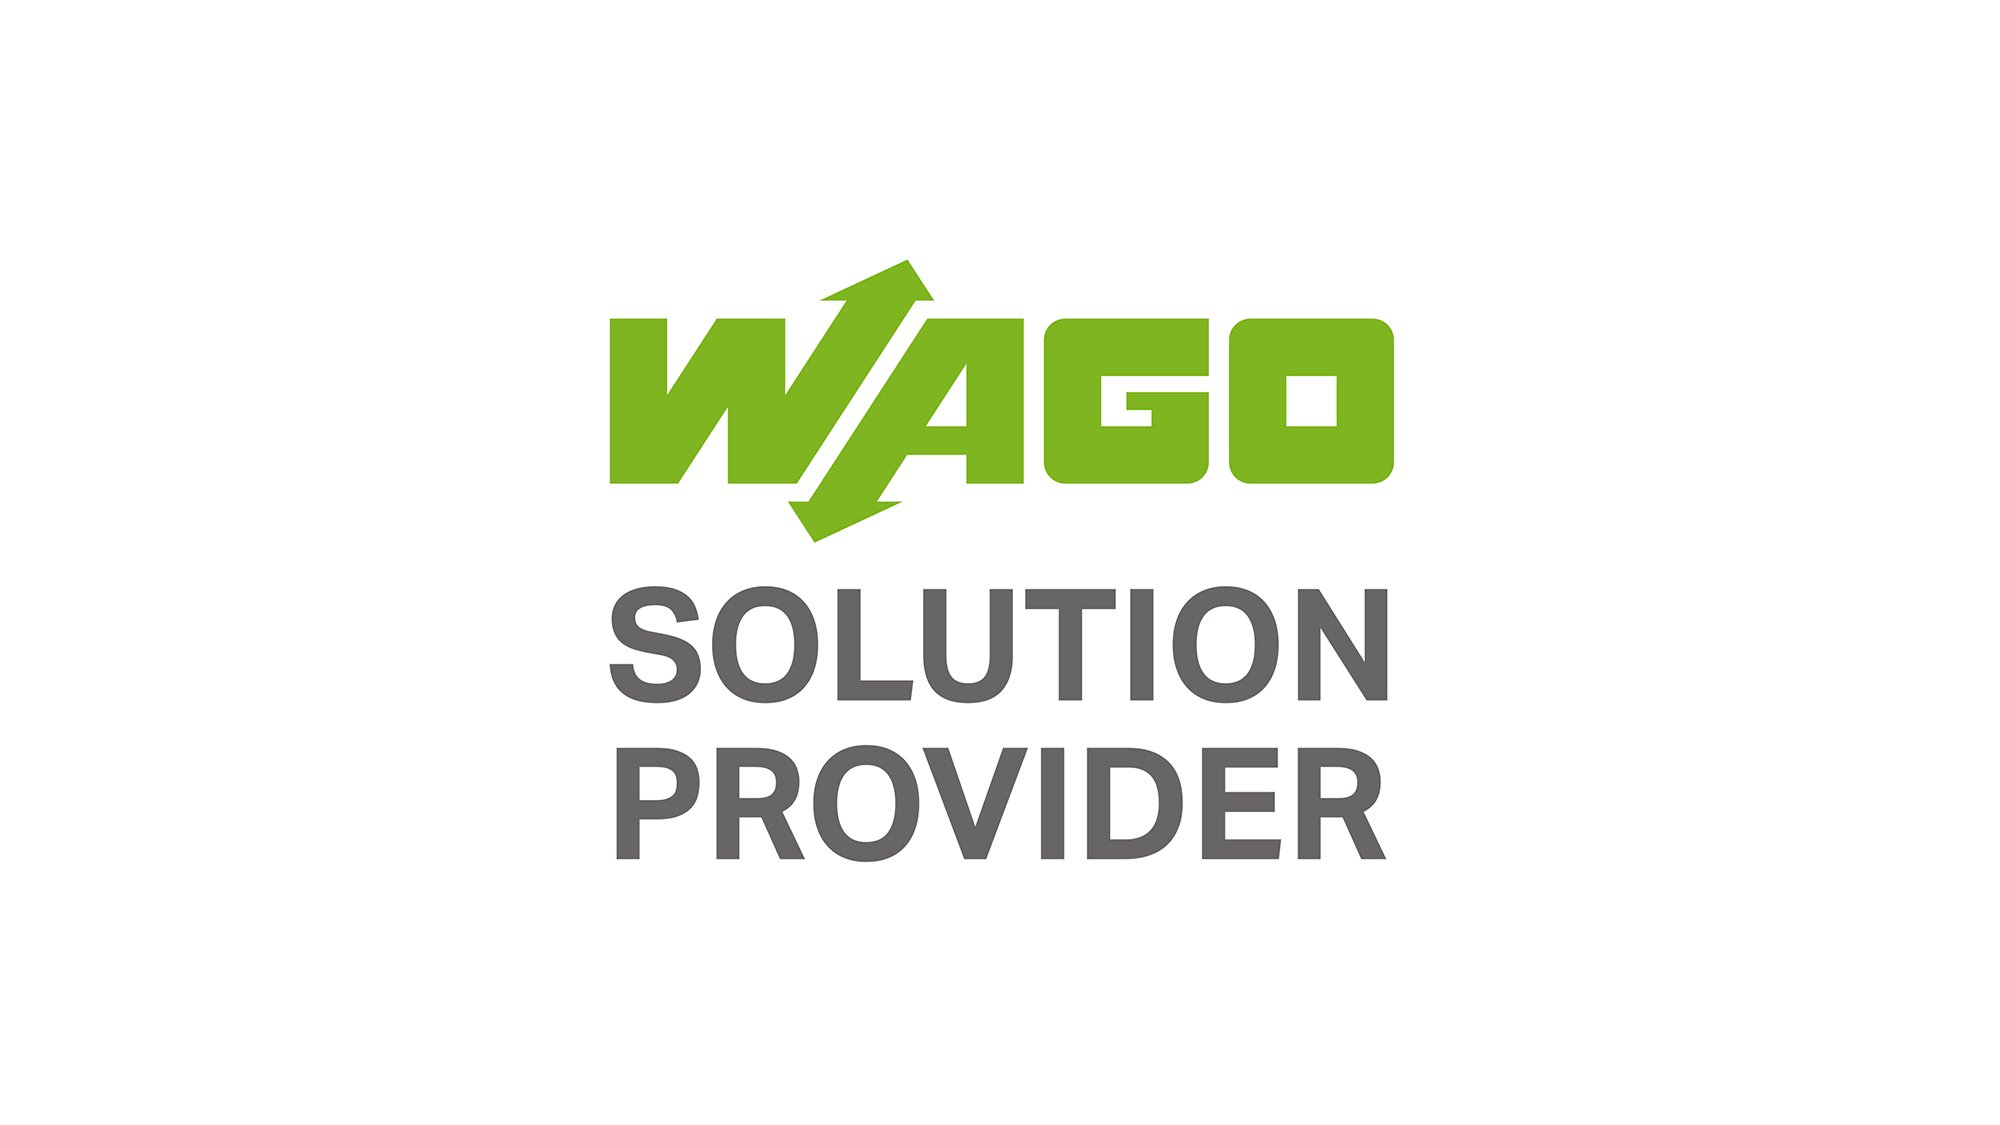 solution_provider_logo_2000x1125.jpg